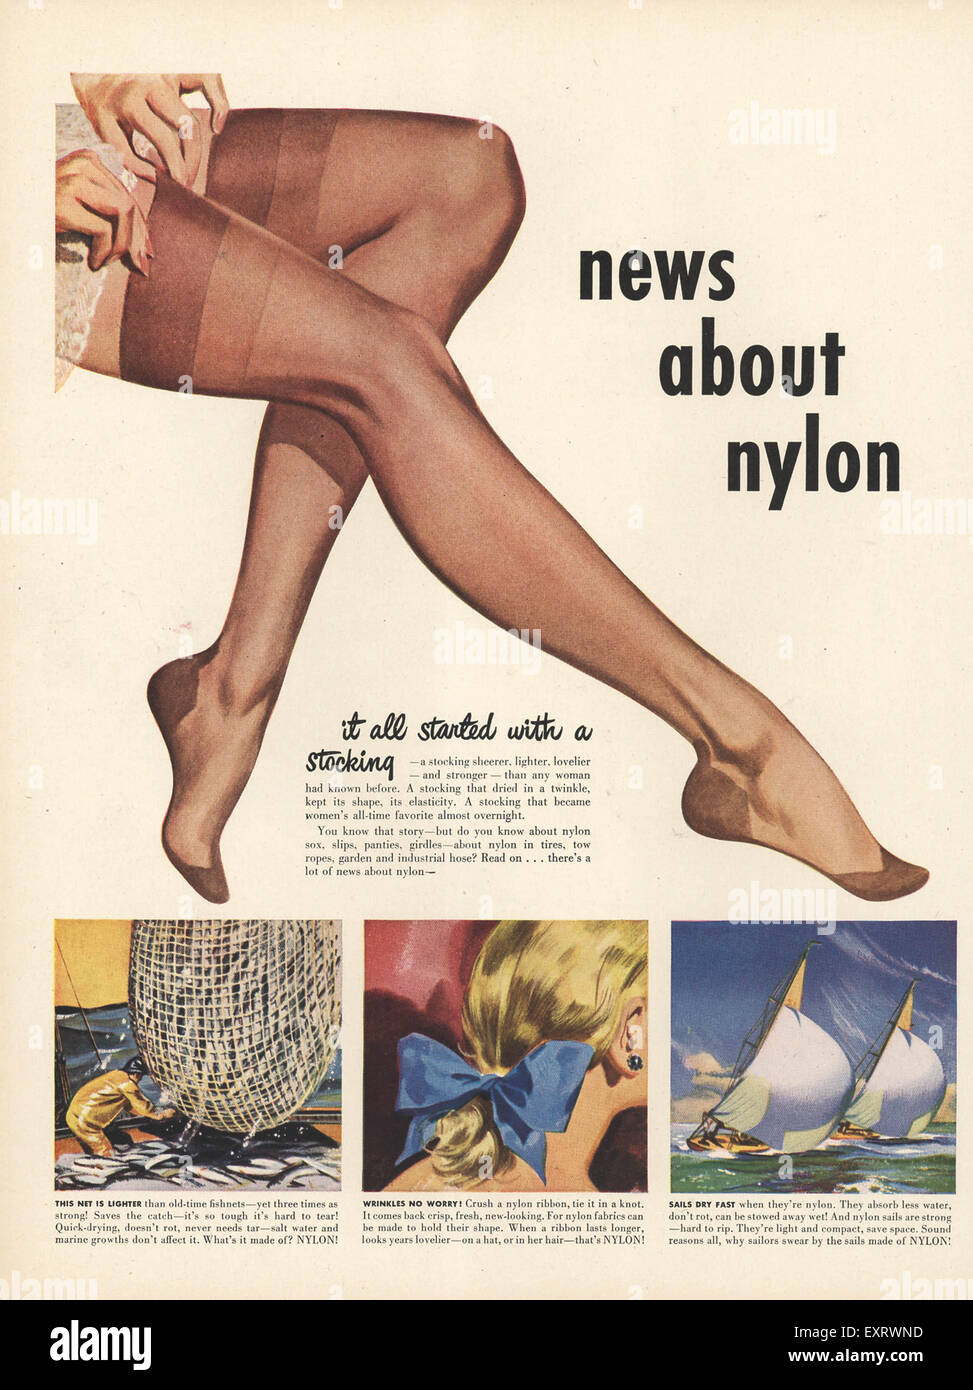 Nylon feet stories